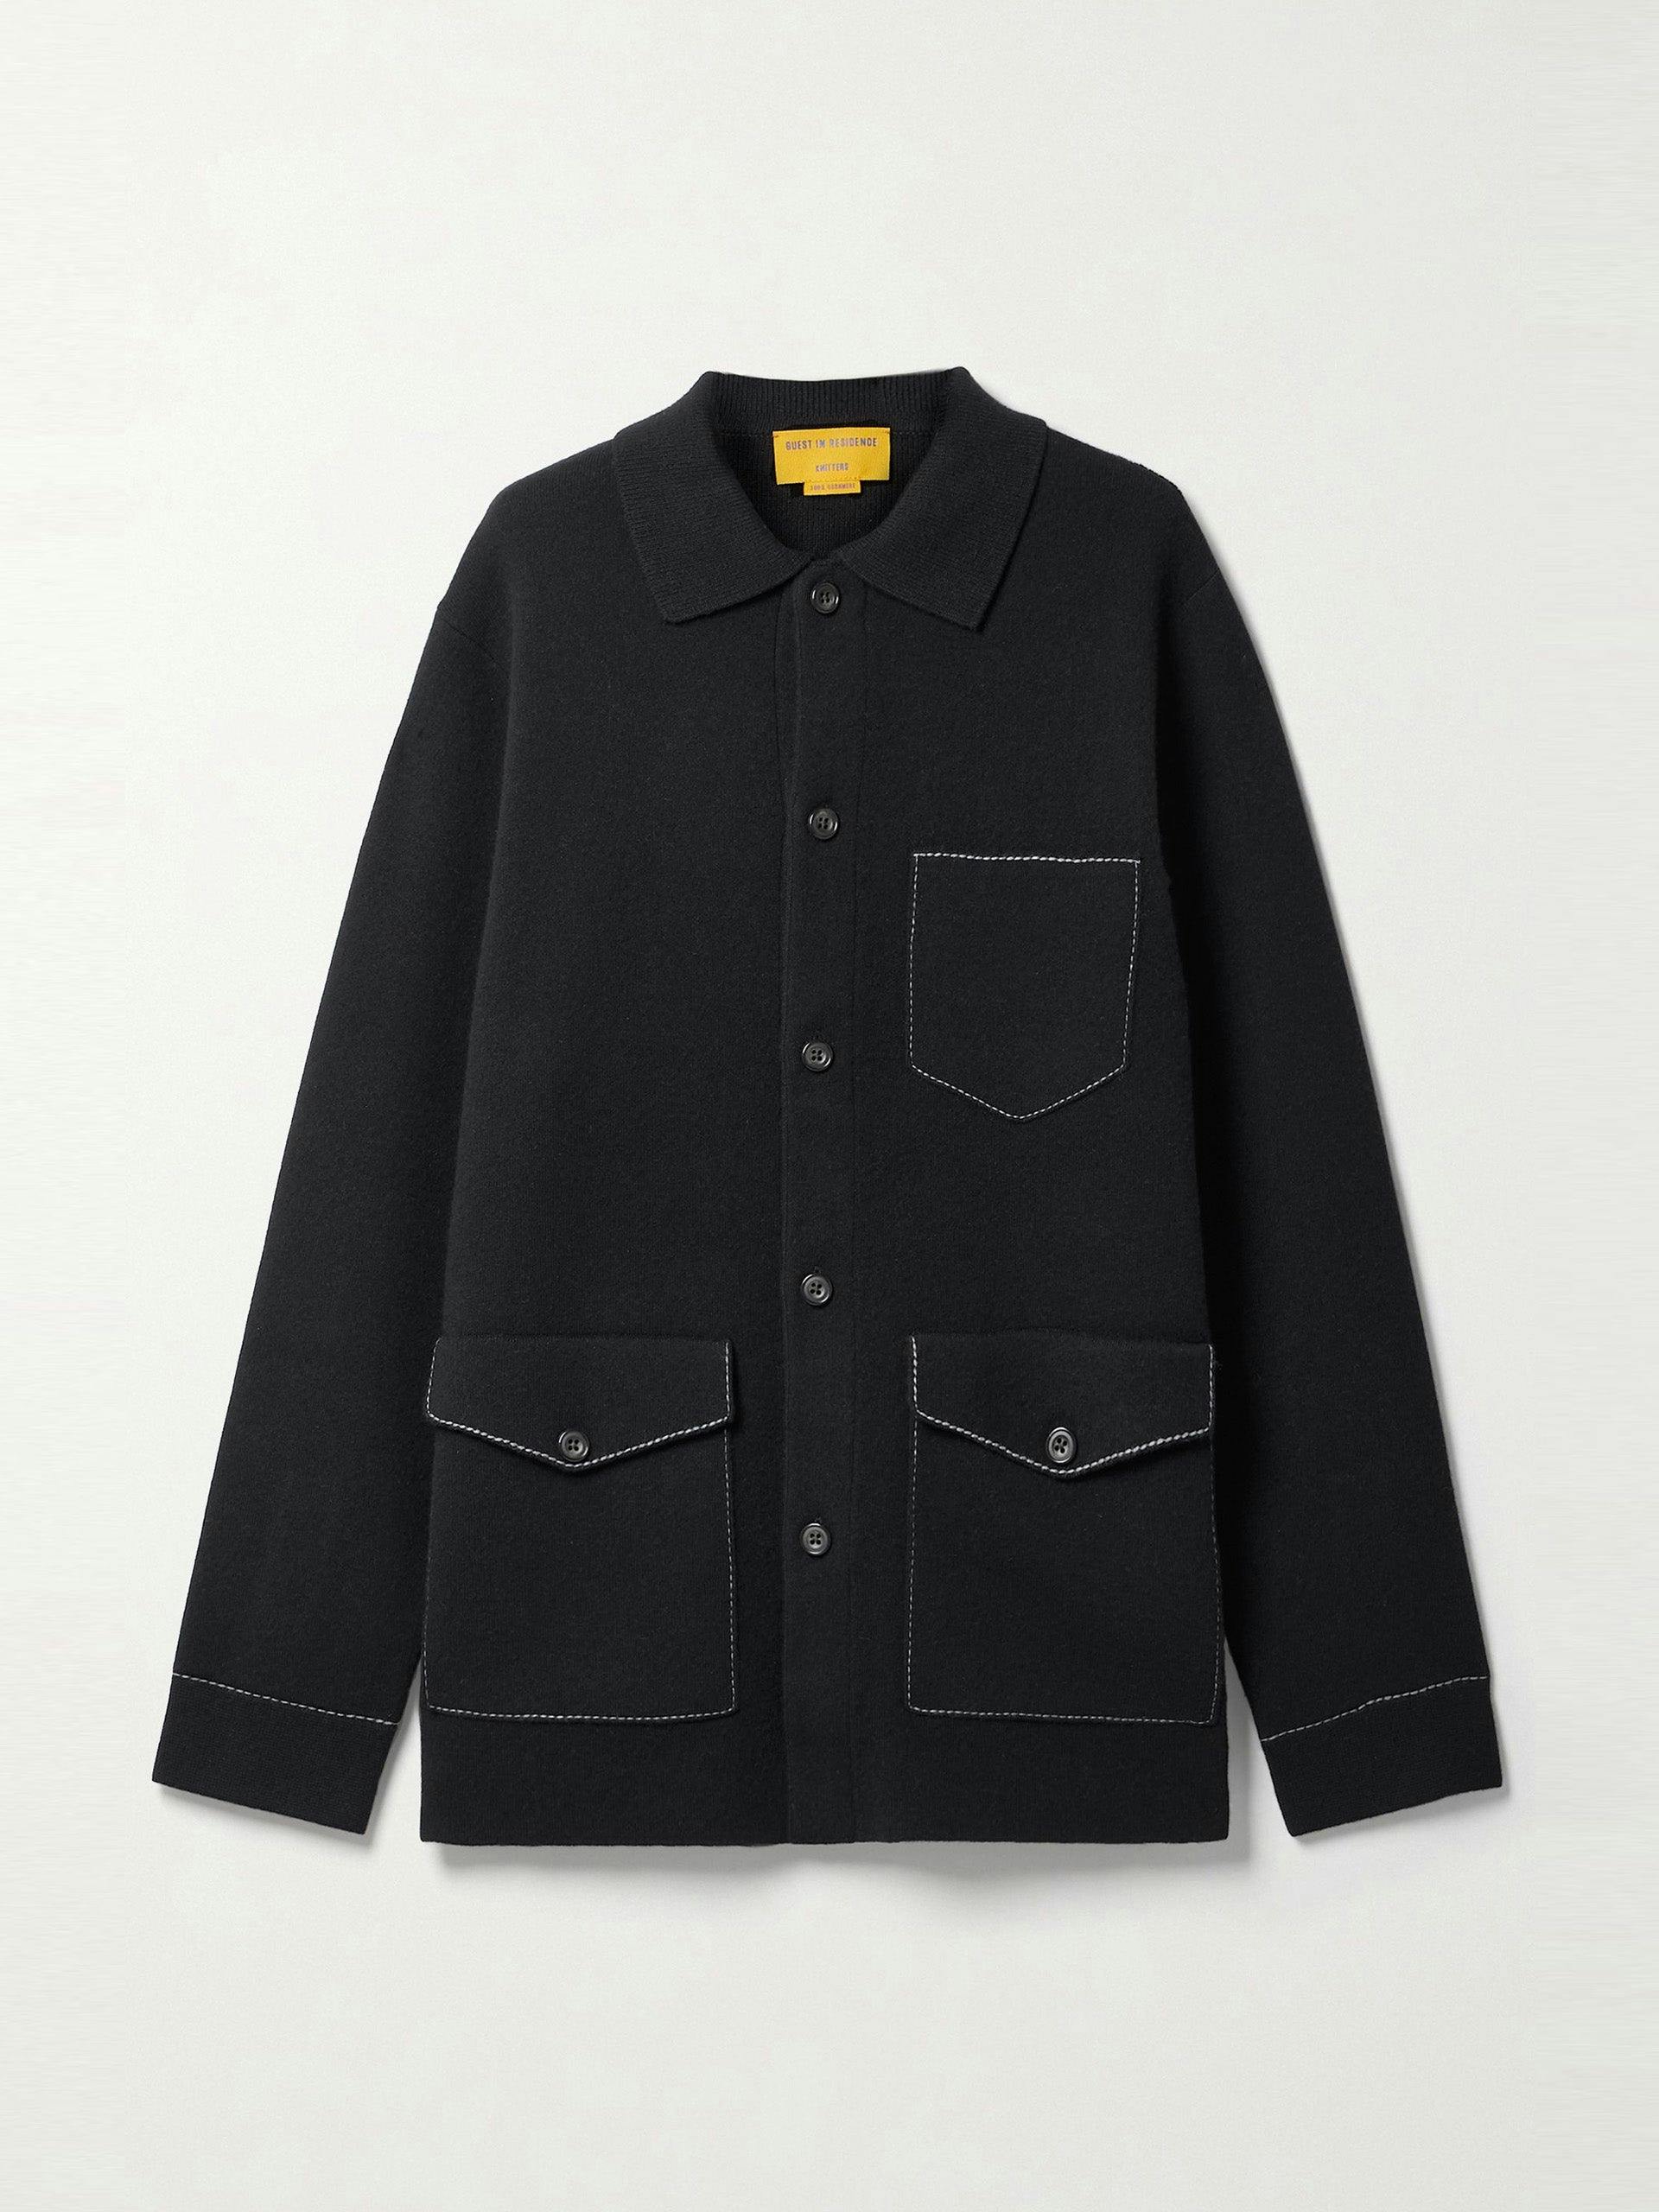 Black oversized cashmere jacket